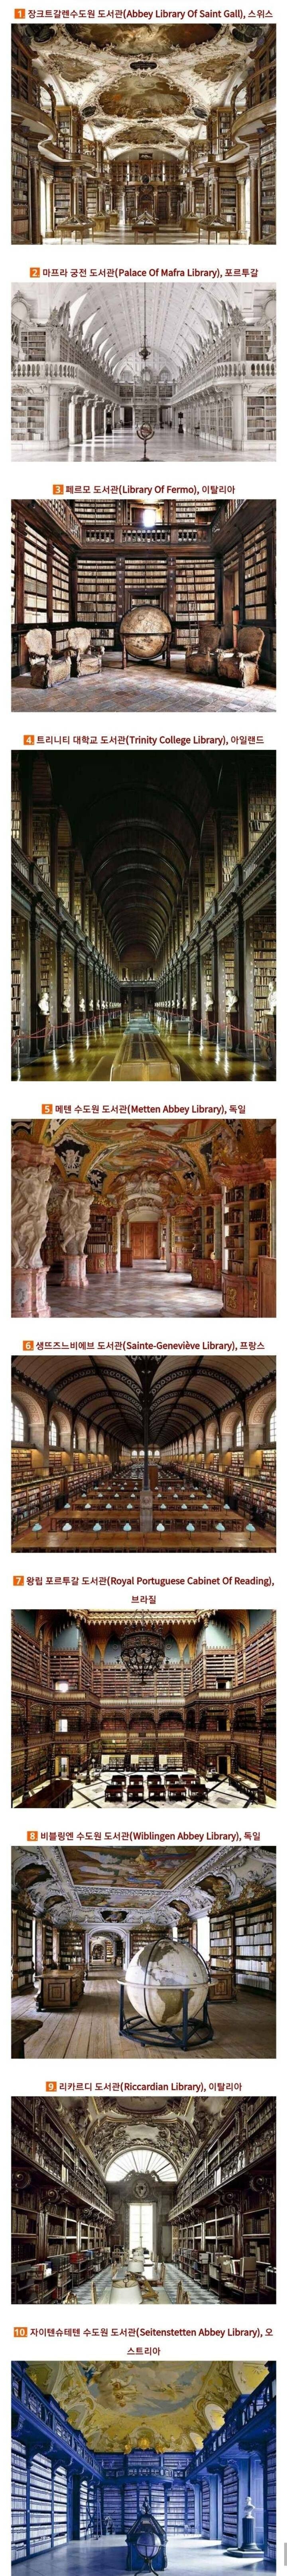 세계에서 가장 아름다운 도서관들